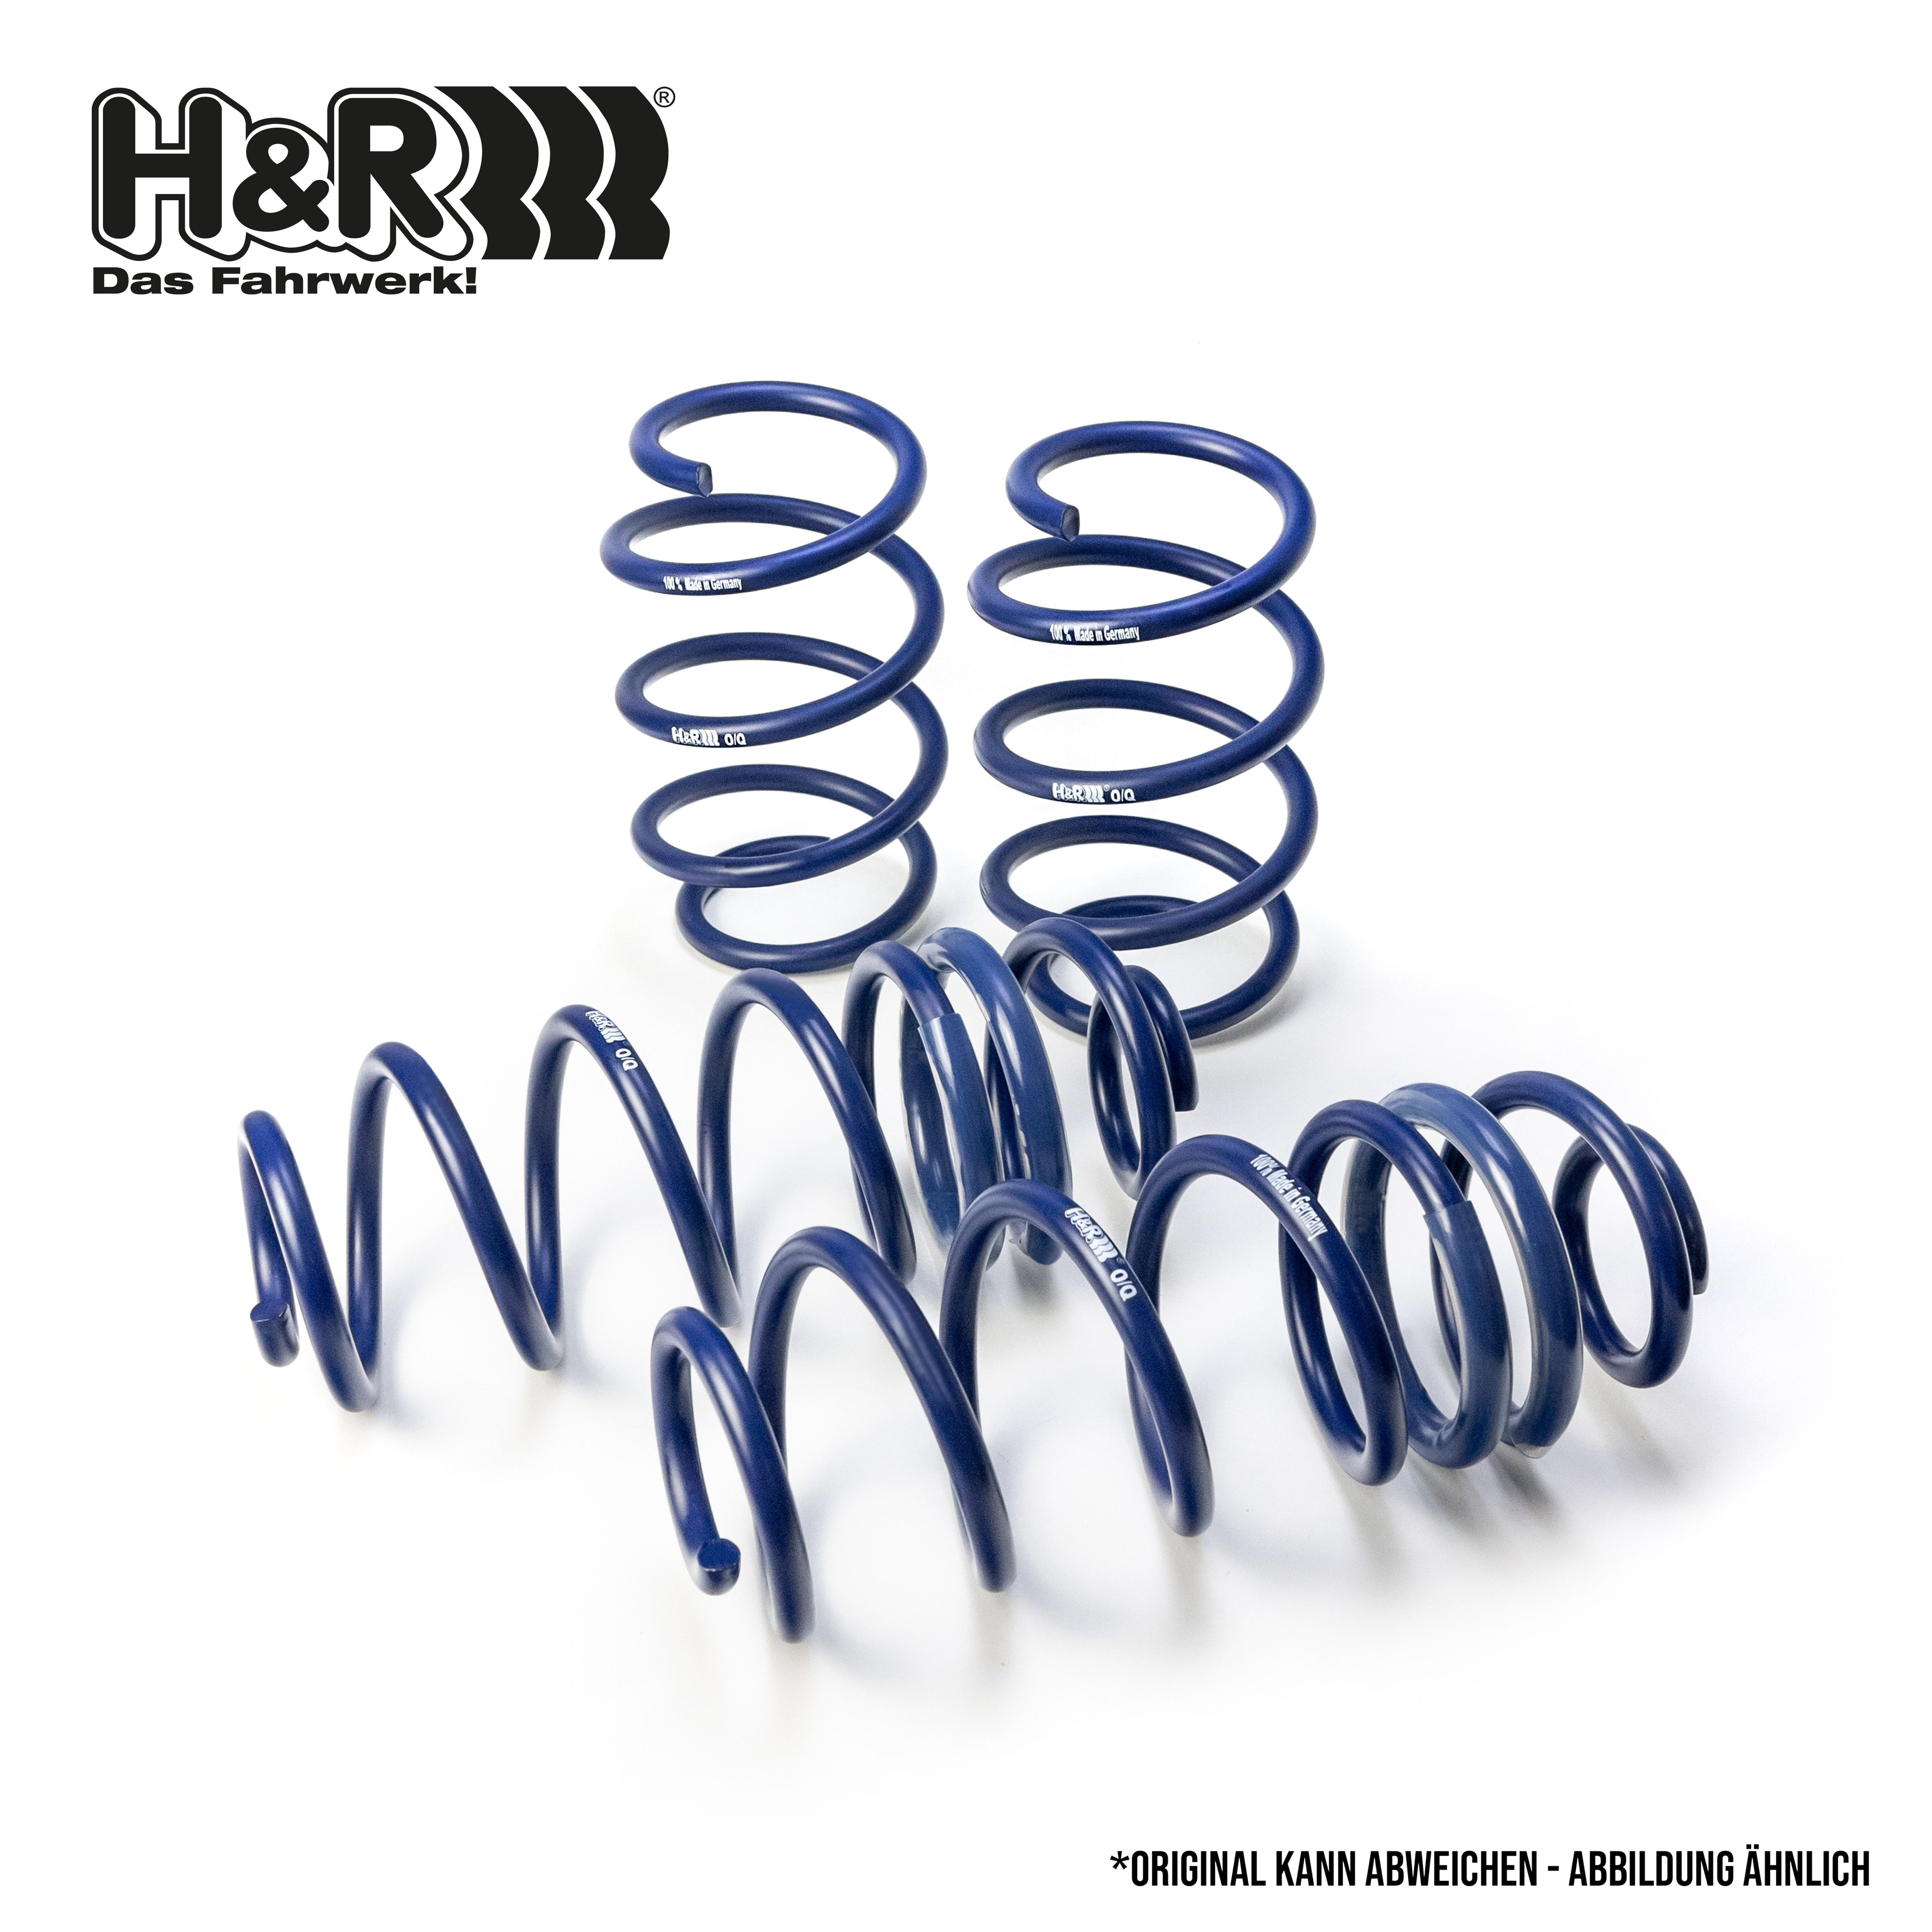 H & R H&R Jeu de suspensions ressorts 28684-3 